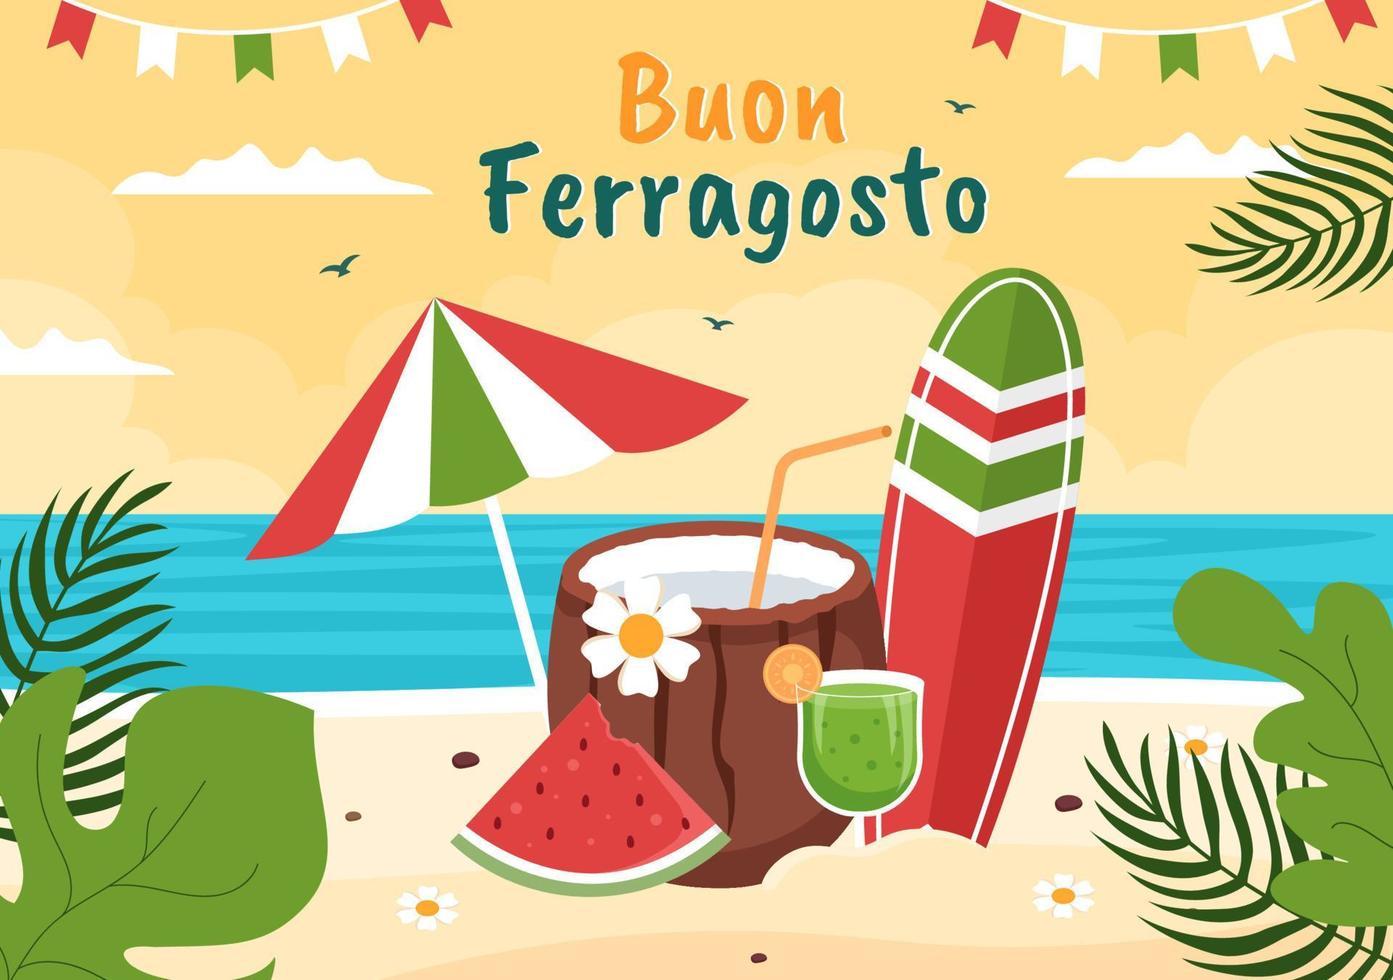 buon ferragosto italienisches sommerfest in der strandkarikaturillustration am feiertag, der am 15. august im flachen design gefeiert wird vektor